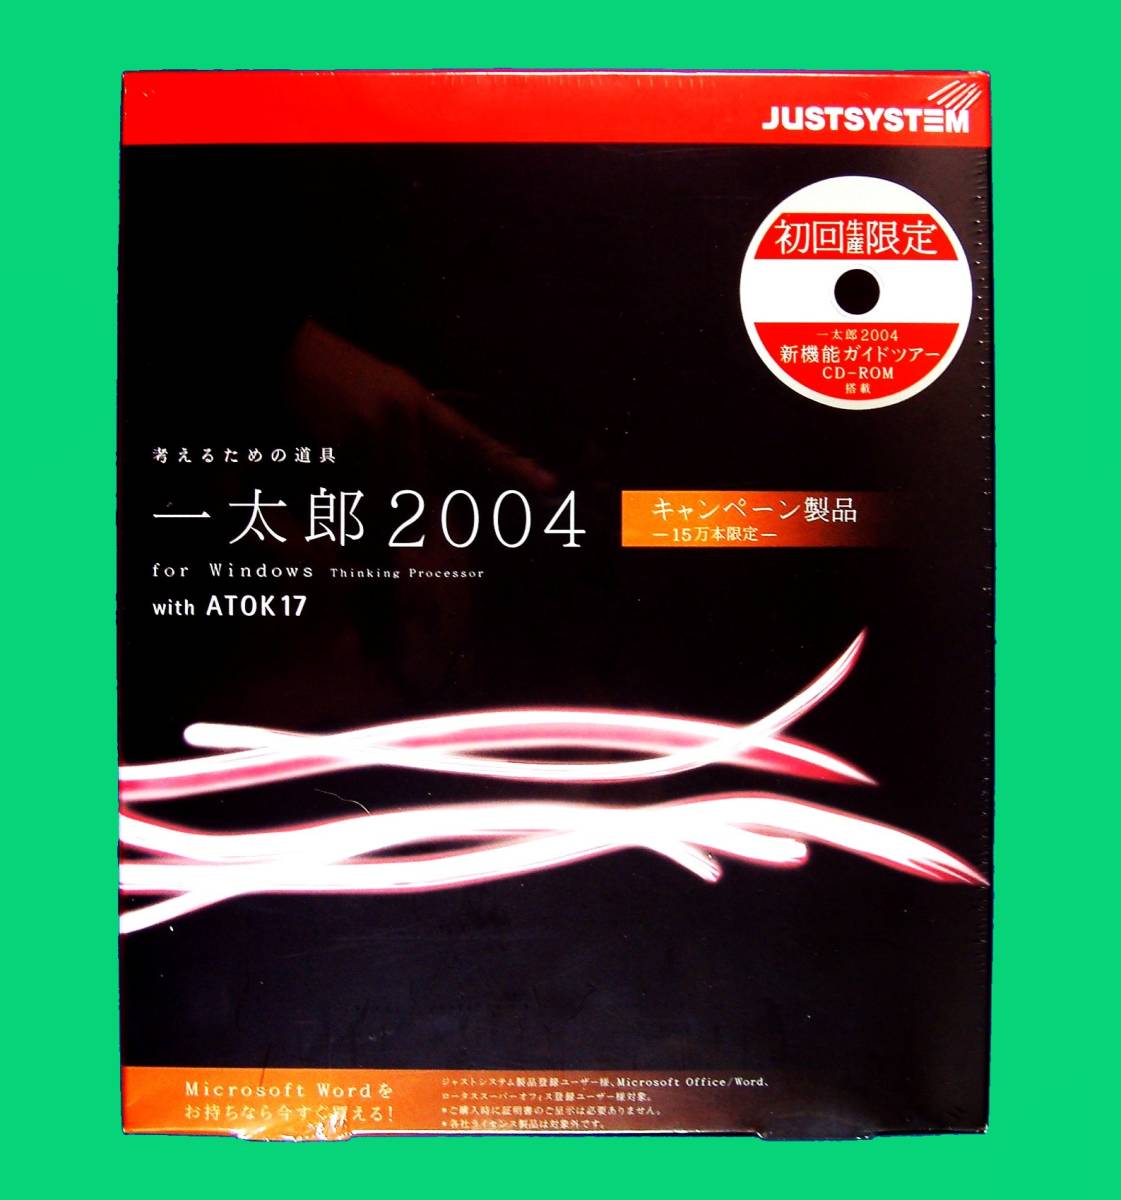 【3235】JustSystem 一太郎2004 with ATOK17 キャンペーン品 未開封 4988637129089 ジャストシステム 対応(PC-98 Windows98,ME,2000Pro,XP)